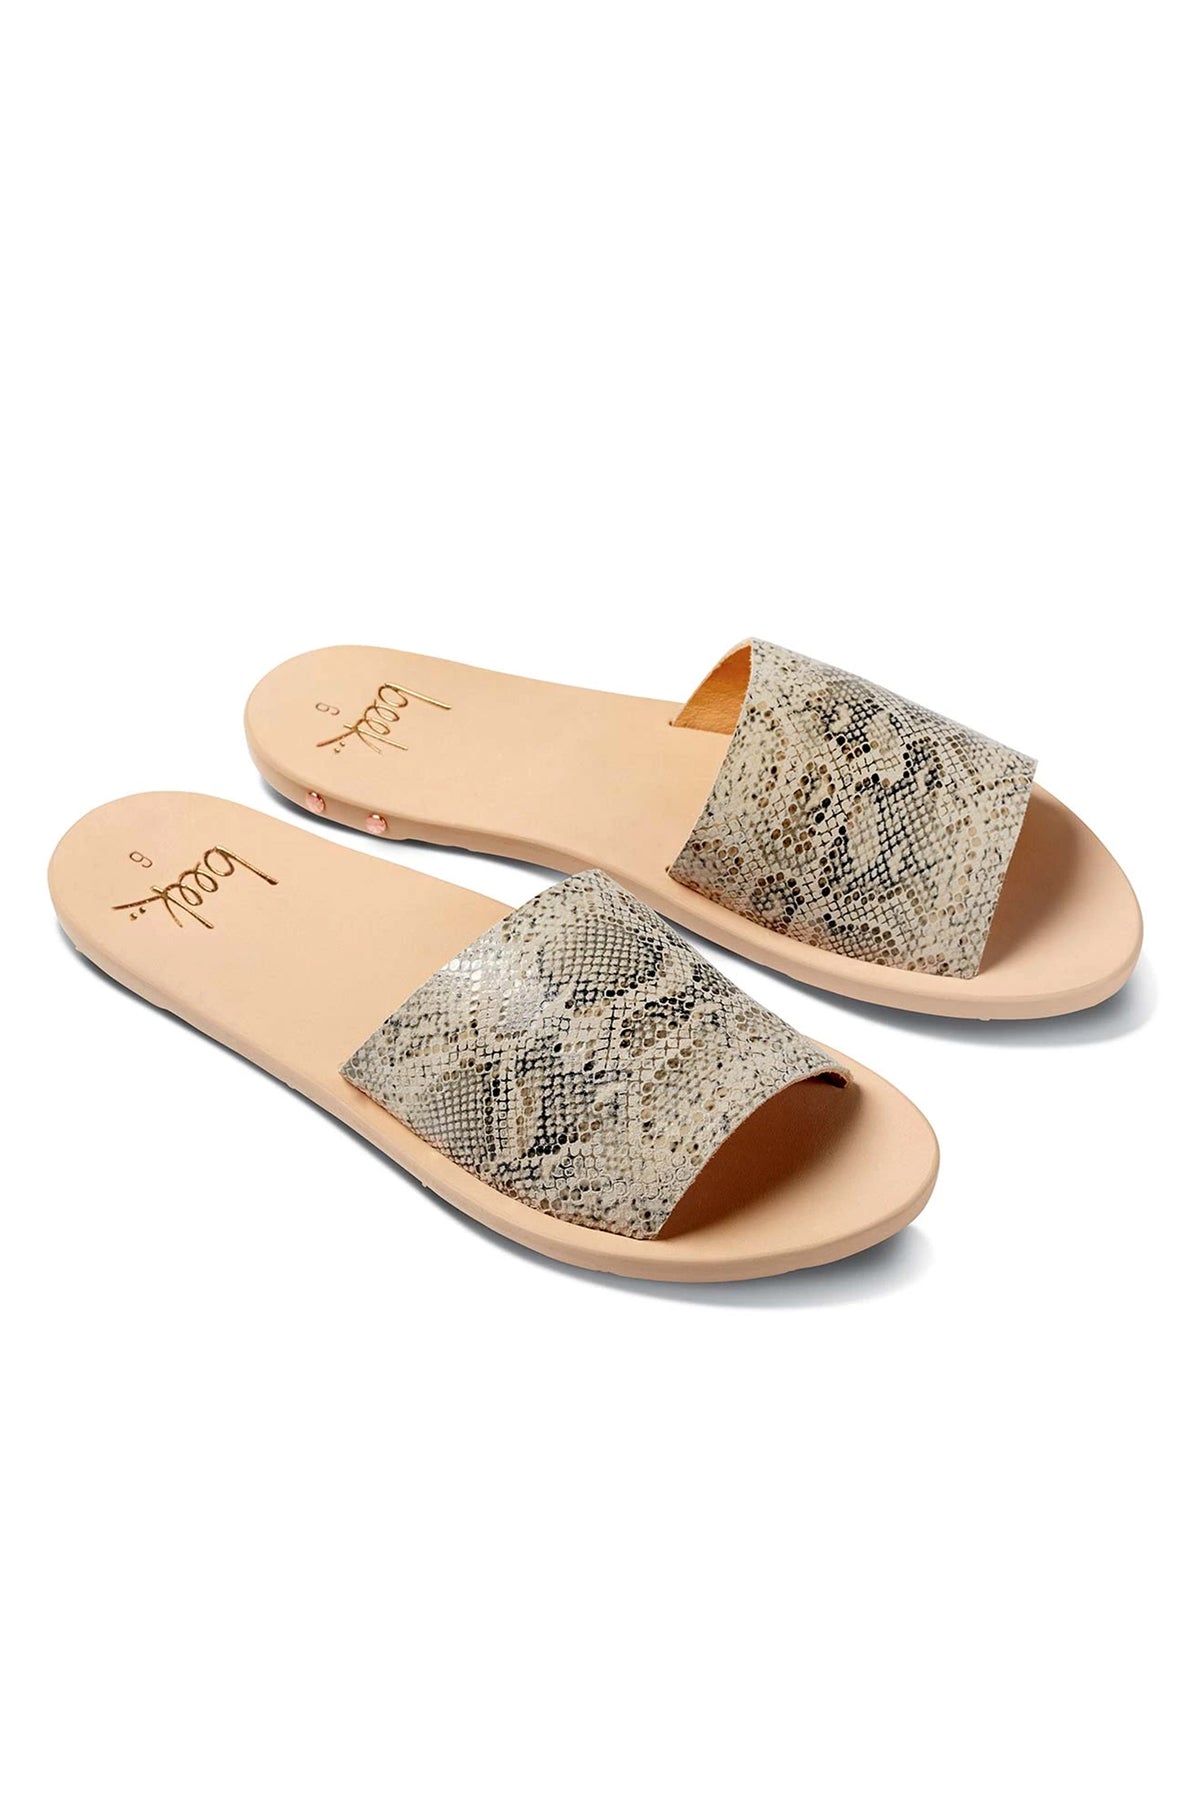 a pair of Beek Mockingbird sandals in beige snakeskin.-20266124148929